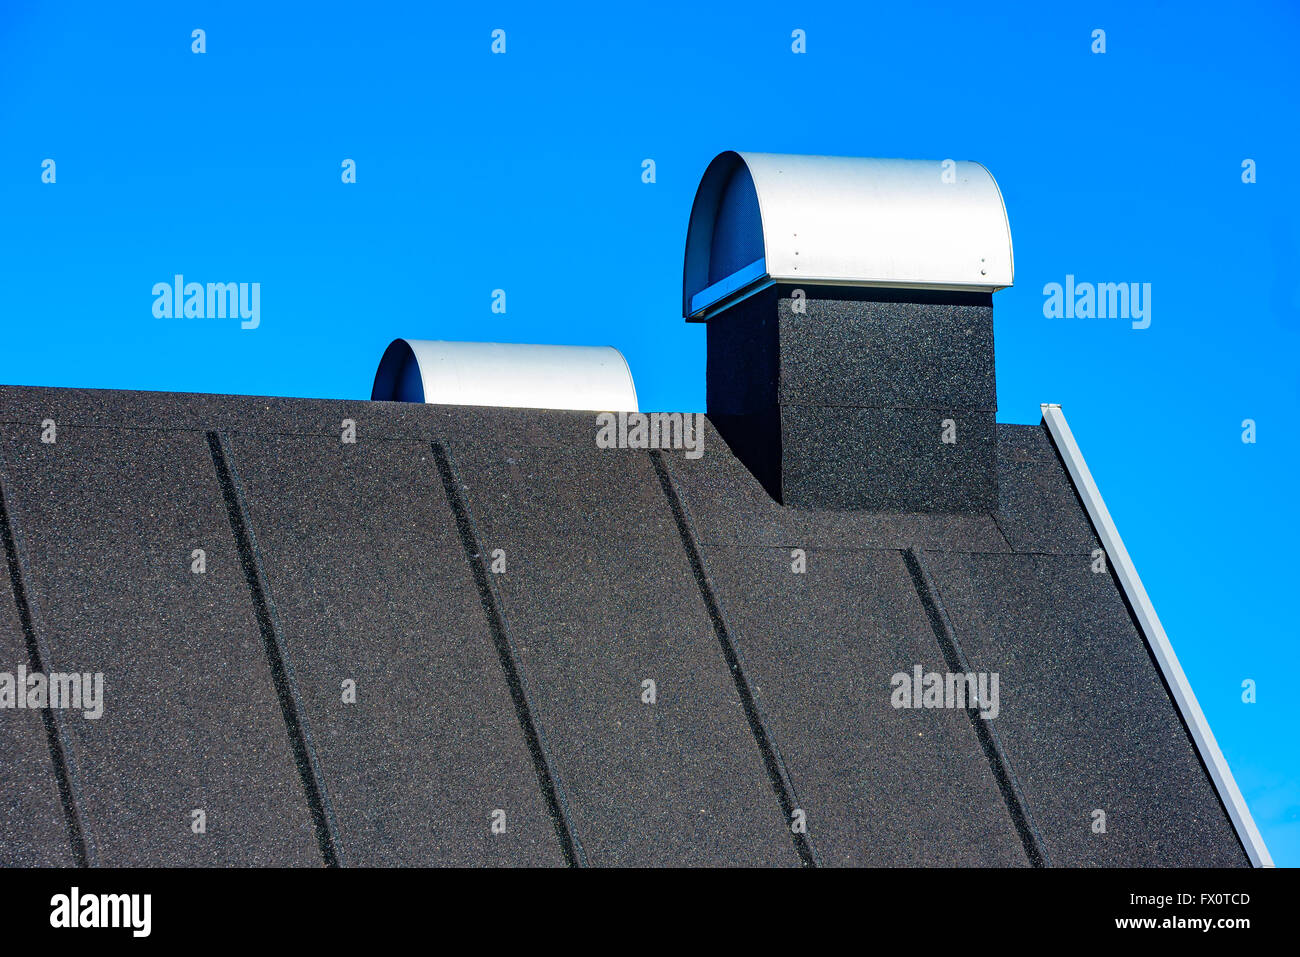 Auf dem Dach mit überdachten Schornsteinen. Dach ist schwarz und mit Teerpappe oder Dachpappe bedeckt. Blauen Himmel im Hintergrund. Stockfoto